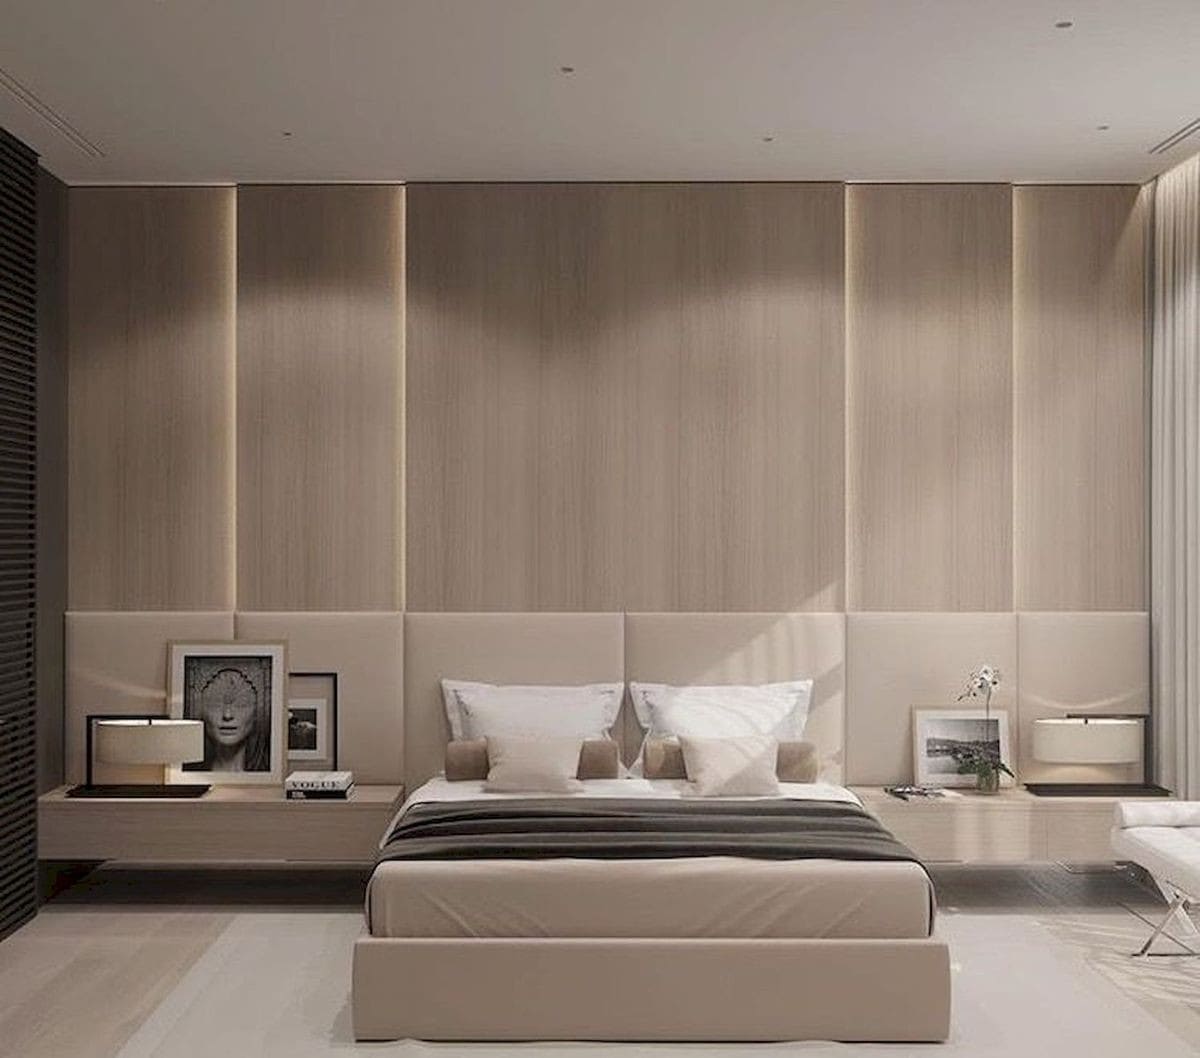 mẫu thiết kế nội thất phòng ngủ với giường bọc nệm và phía đầu giường được ốp gỗ rất đẹp và sang trọng